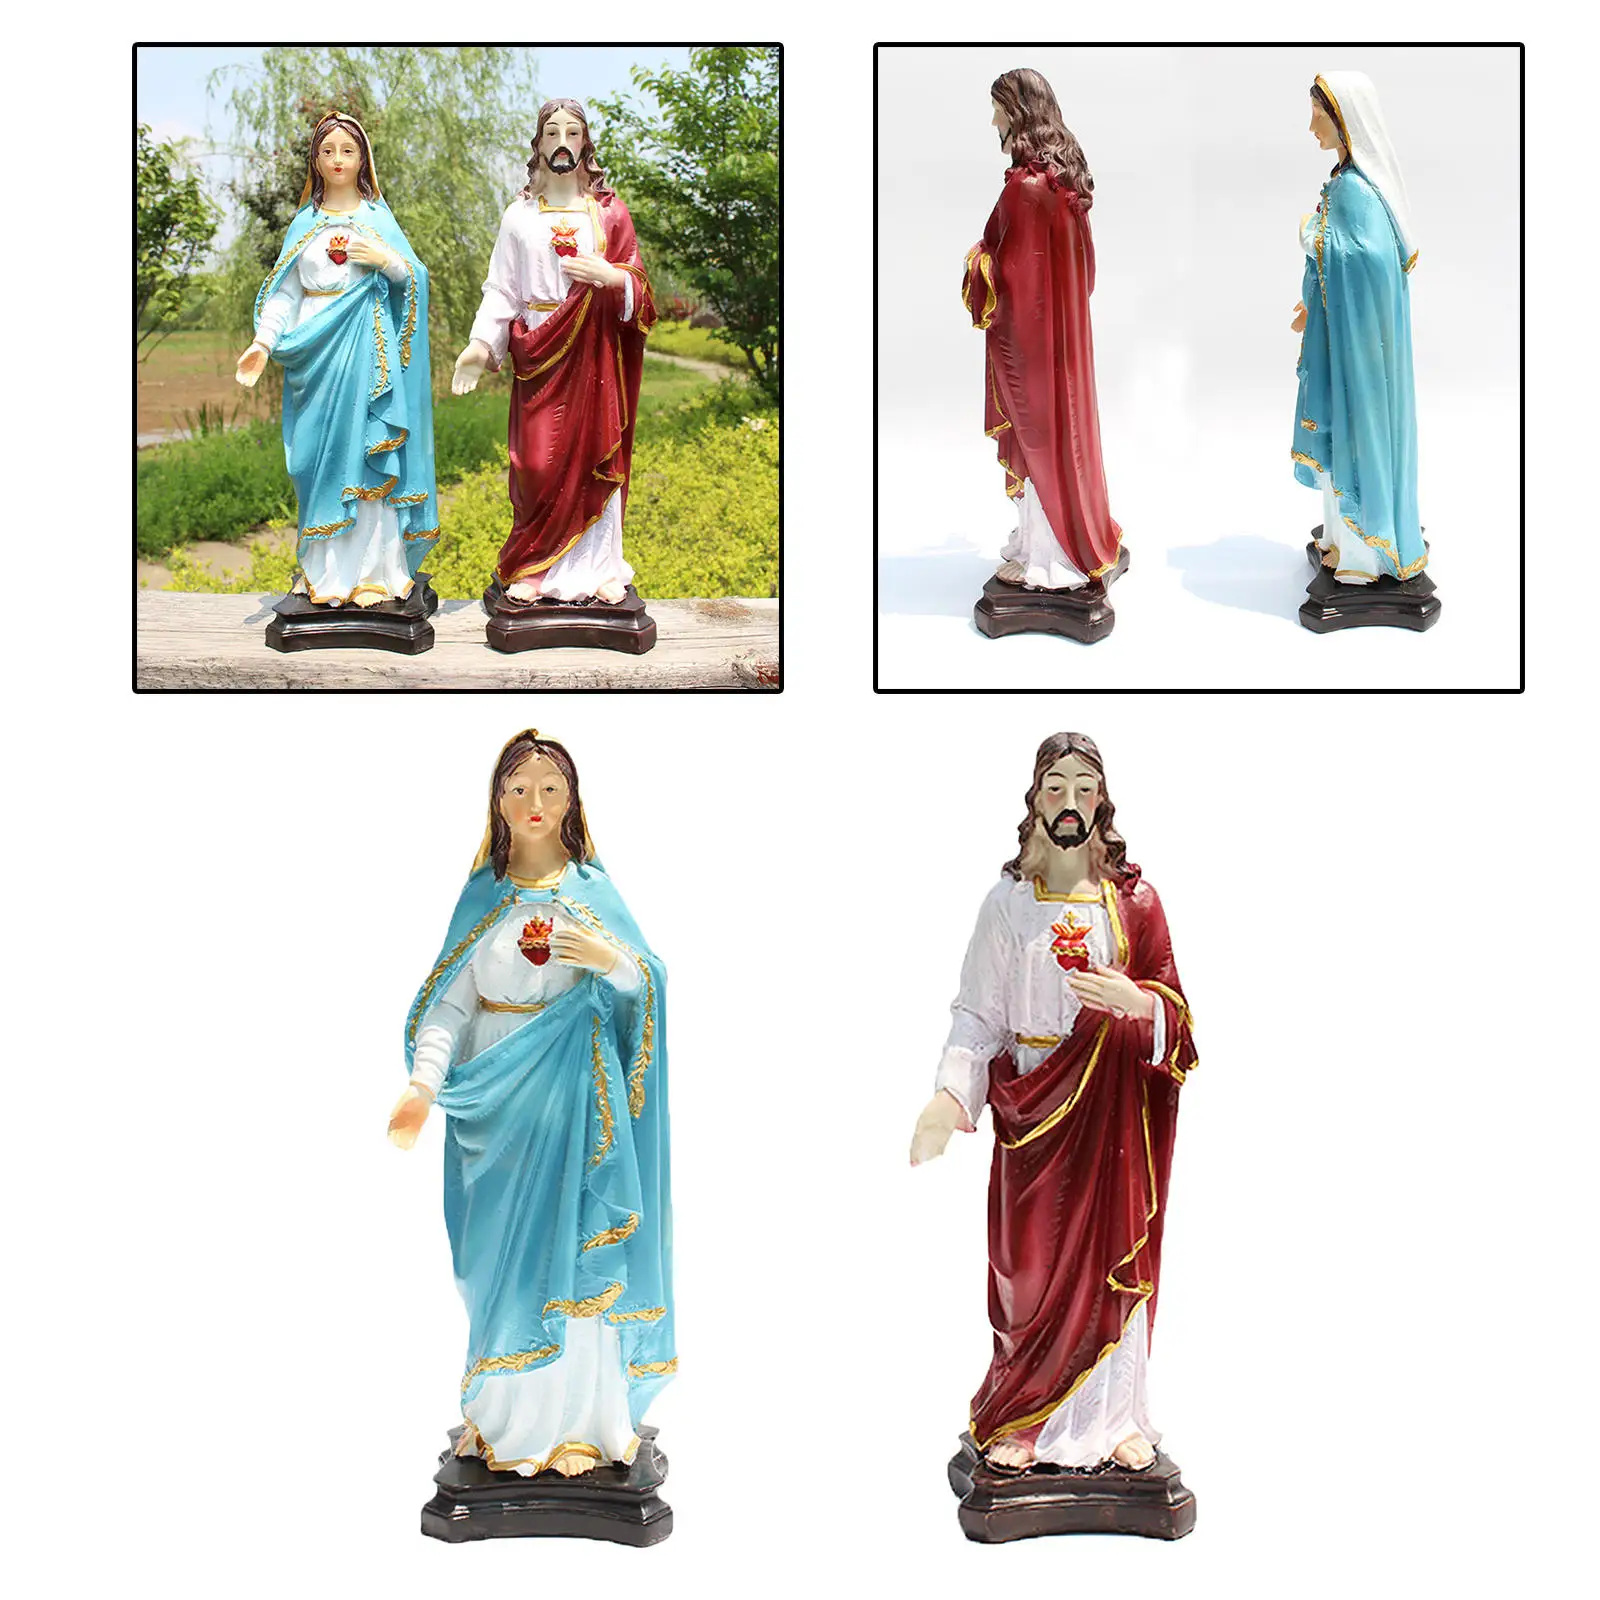 Статуя Иисуса/Марии ручной росписи христианская скульптура статуэтка поделки из